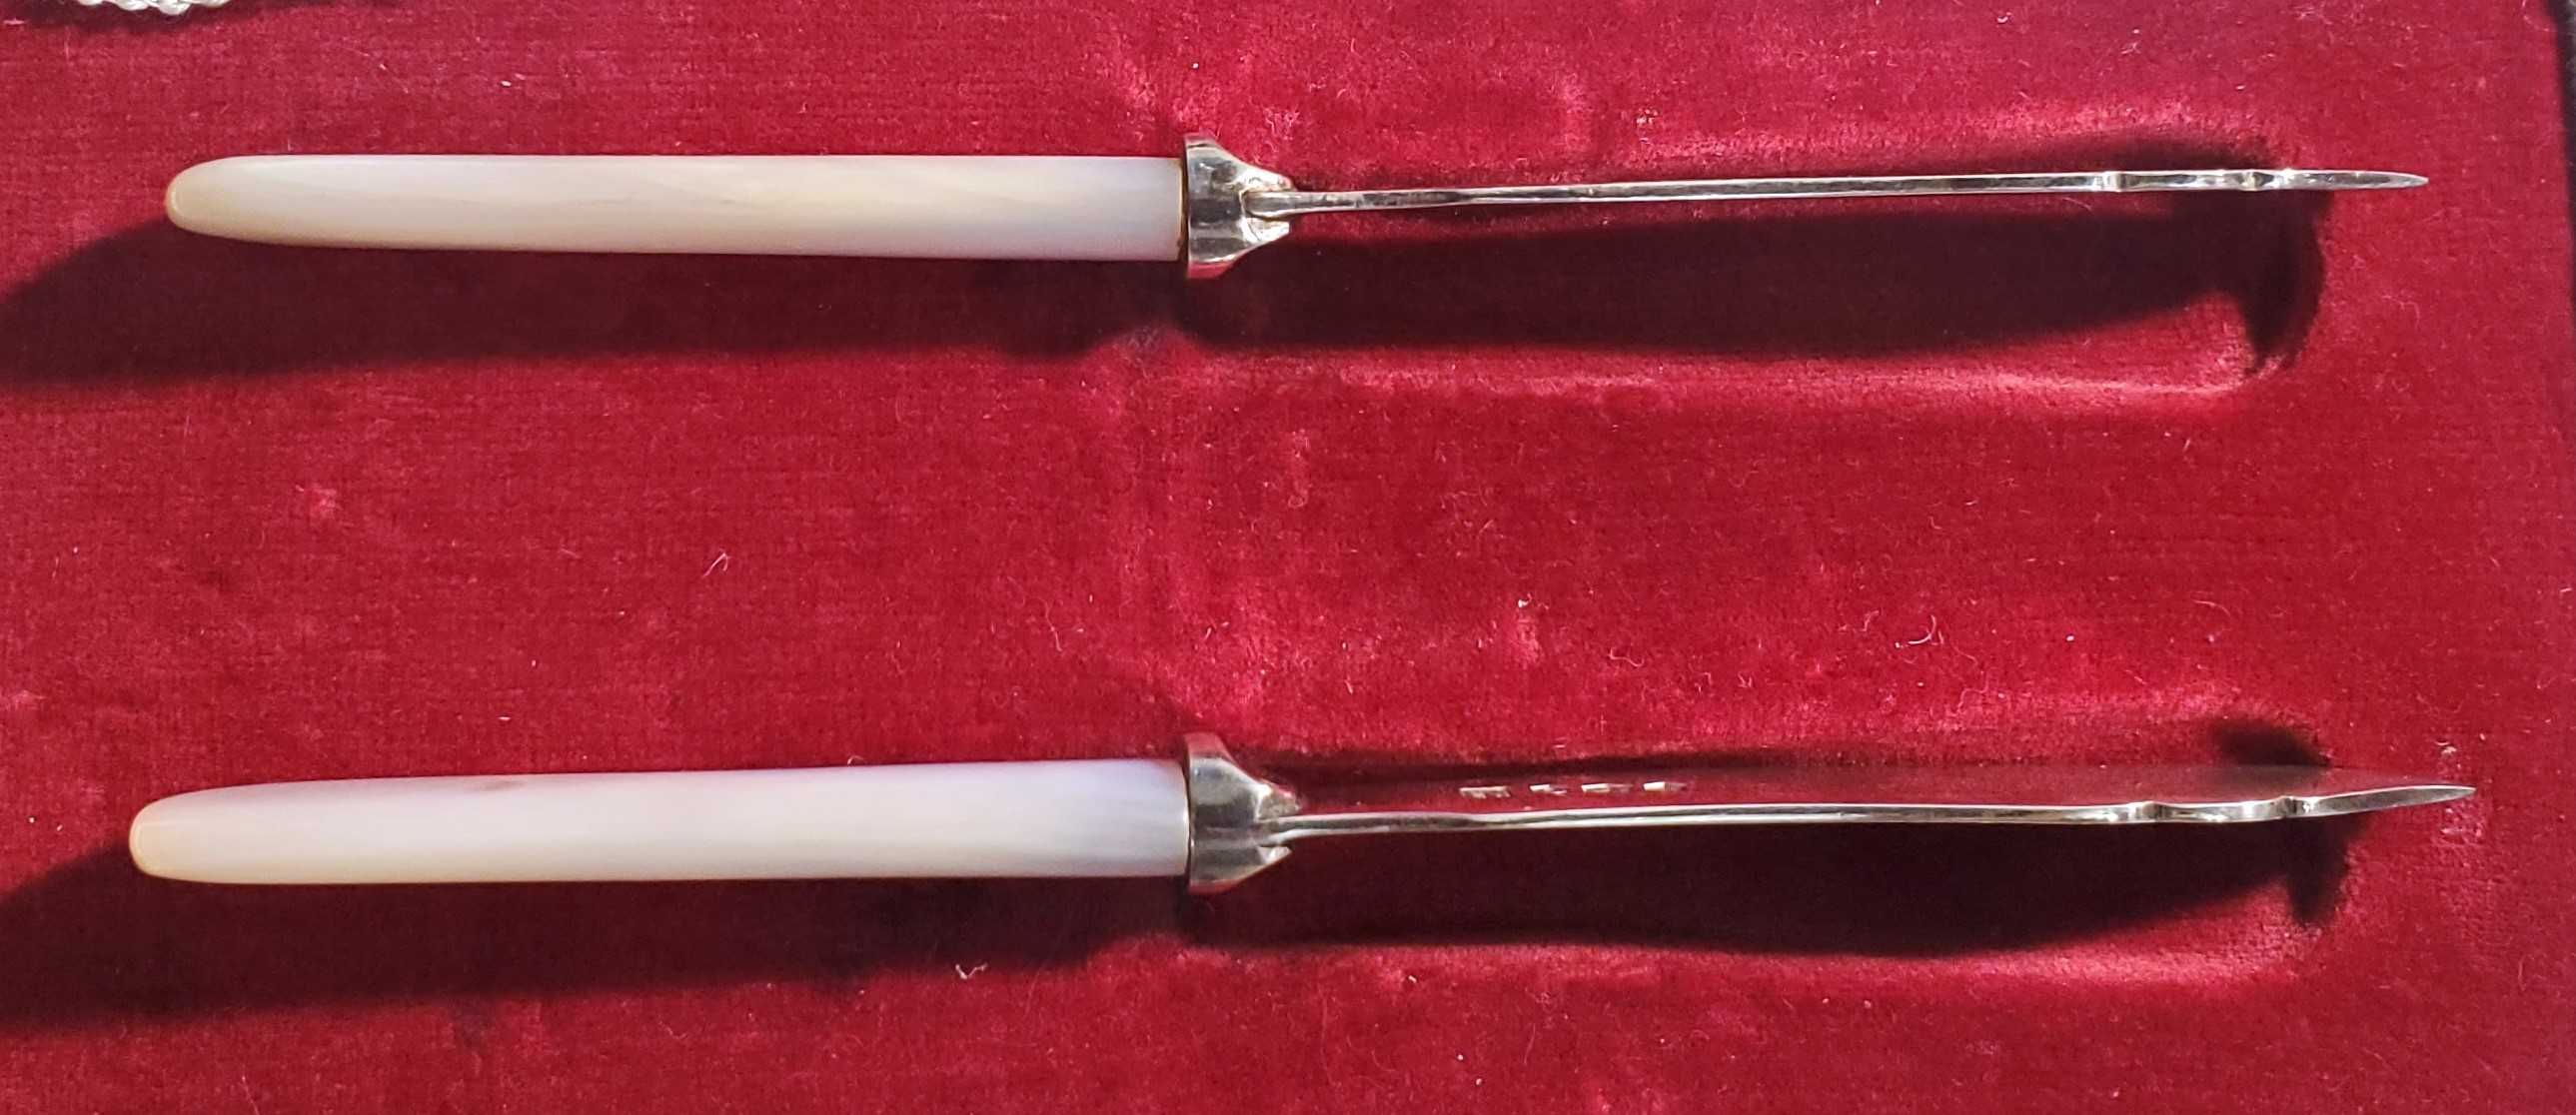 Новые Серебрянные ножи с перламутровой ручкой-Великобритания. Комплект